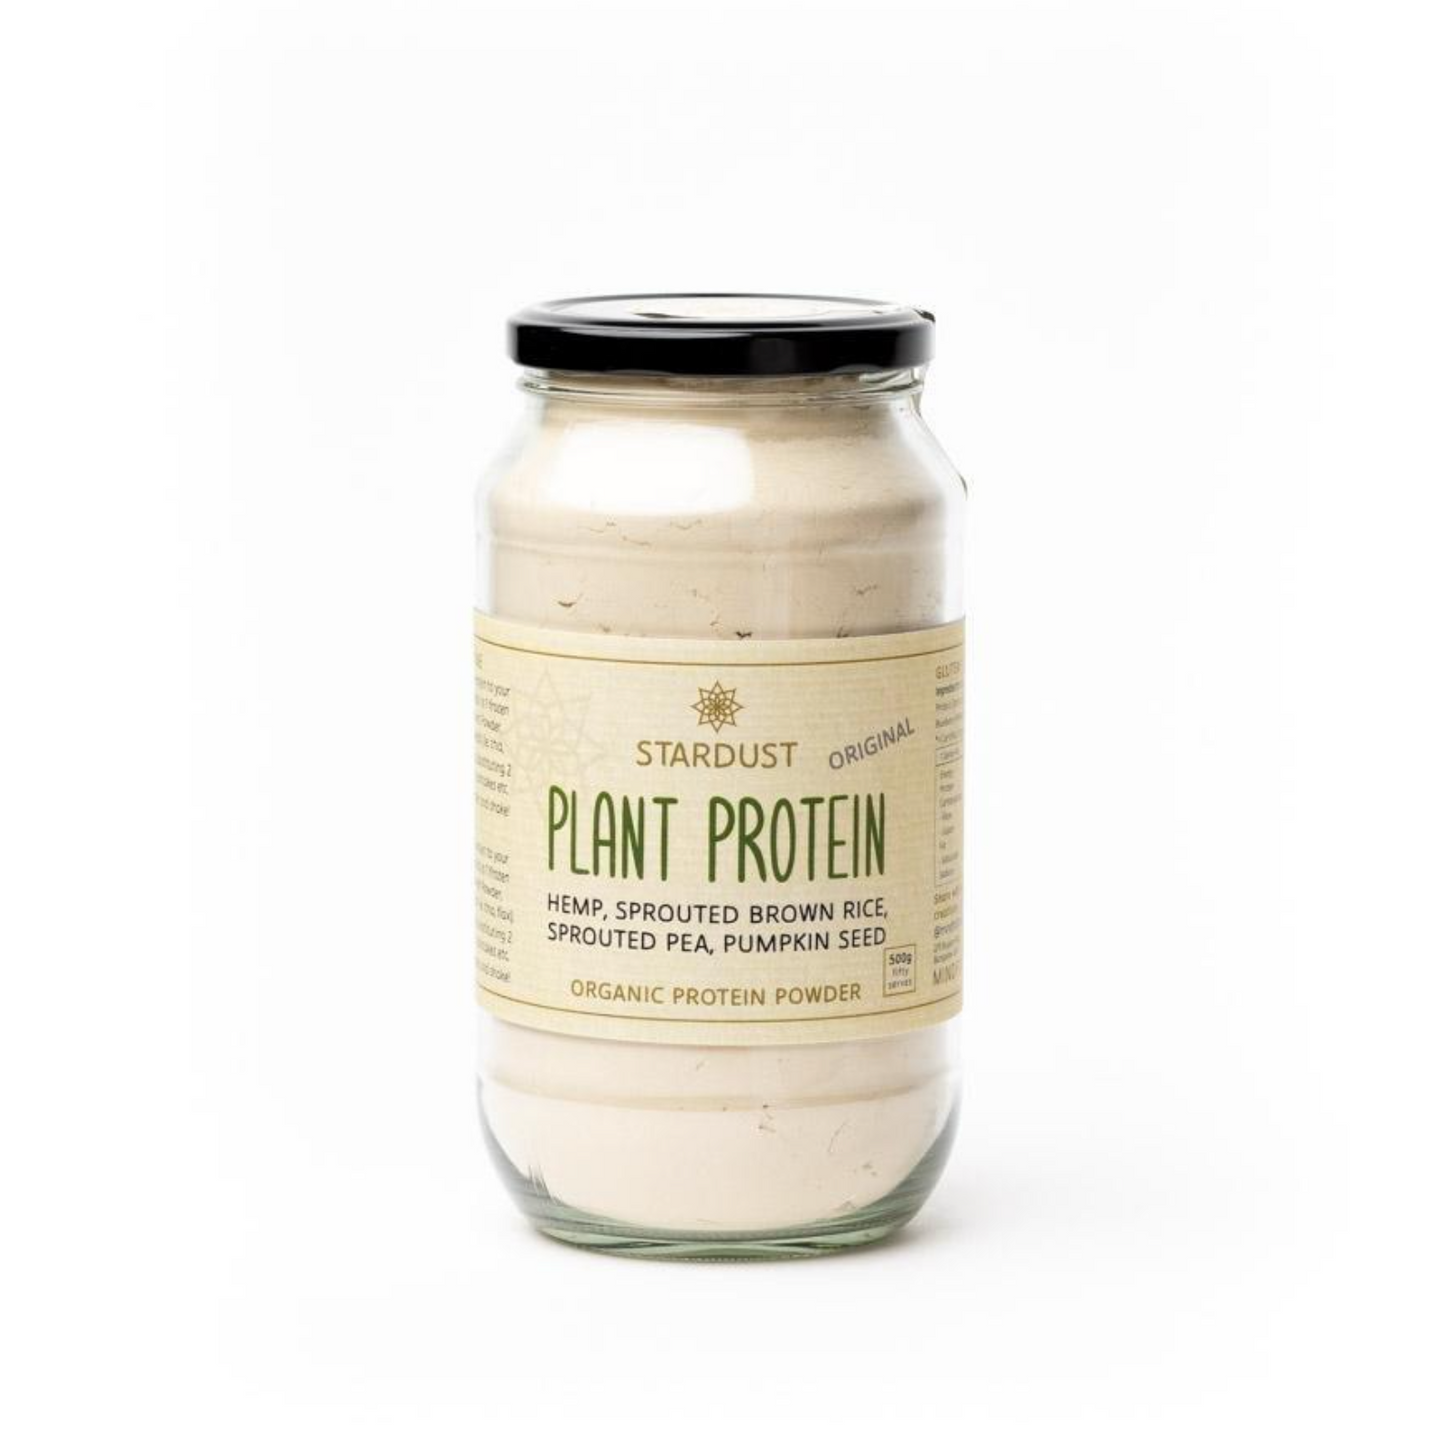 Stardust Plant Protein Powder 380g, Original Flavour Gluten Free & Organic